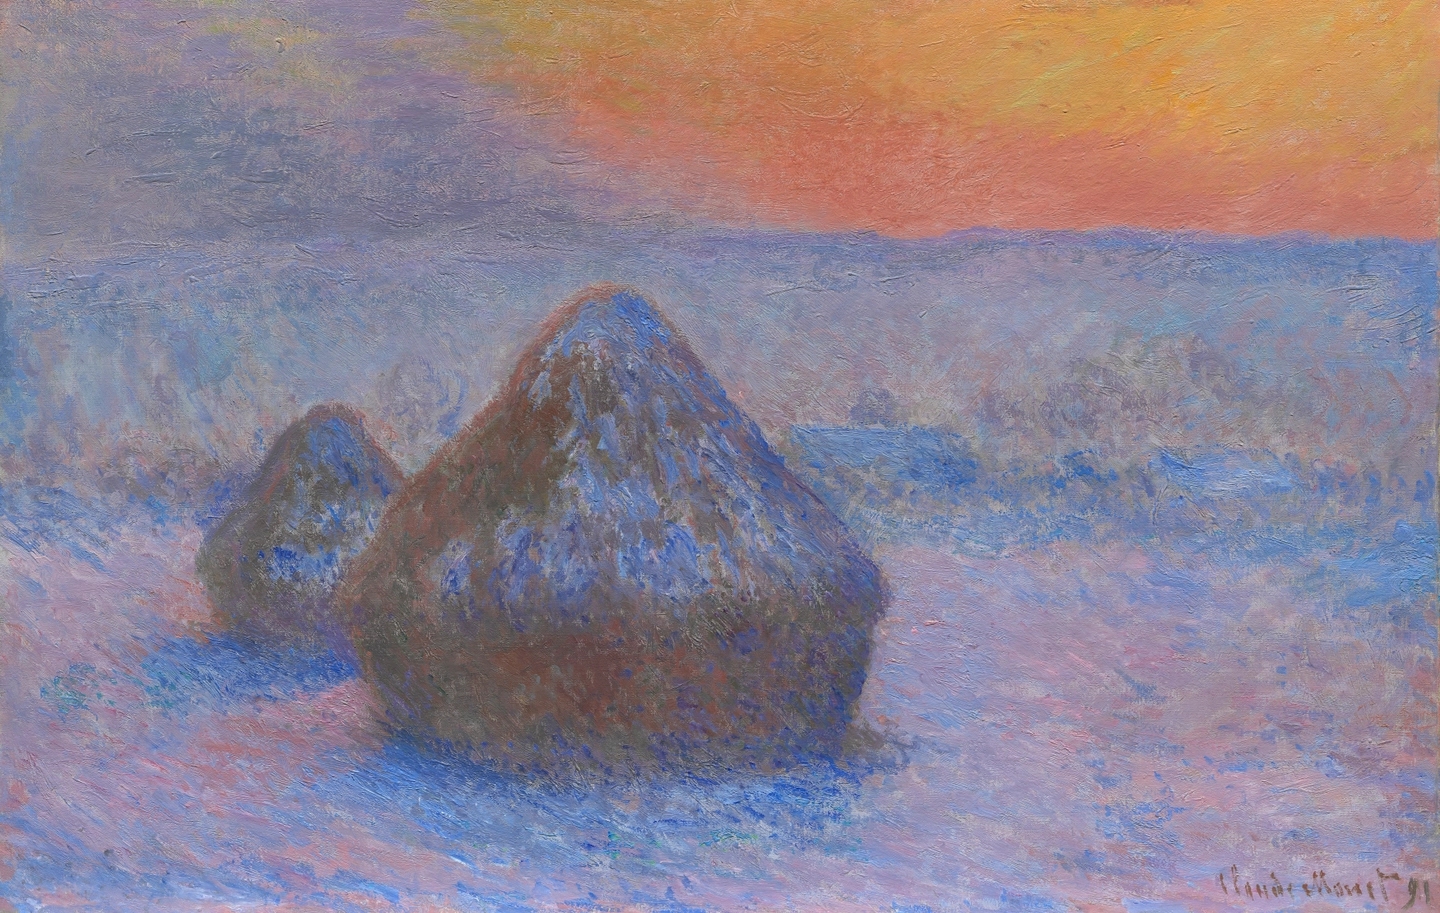 Une mise en scène contemplative de la peinture de Monet